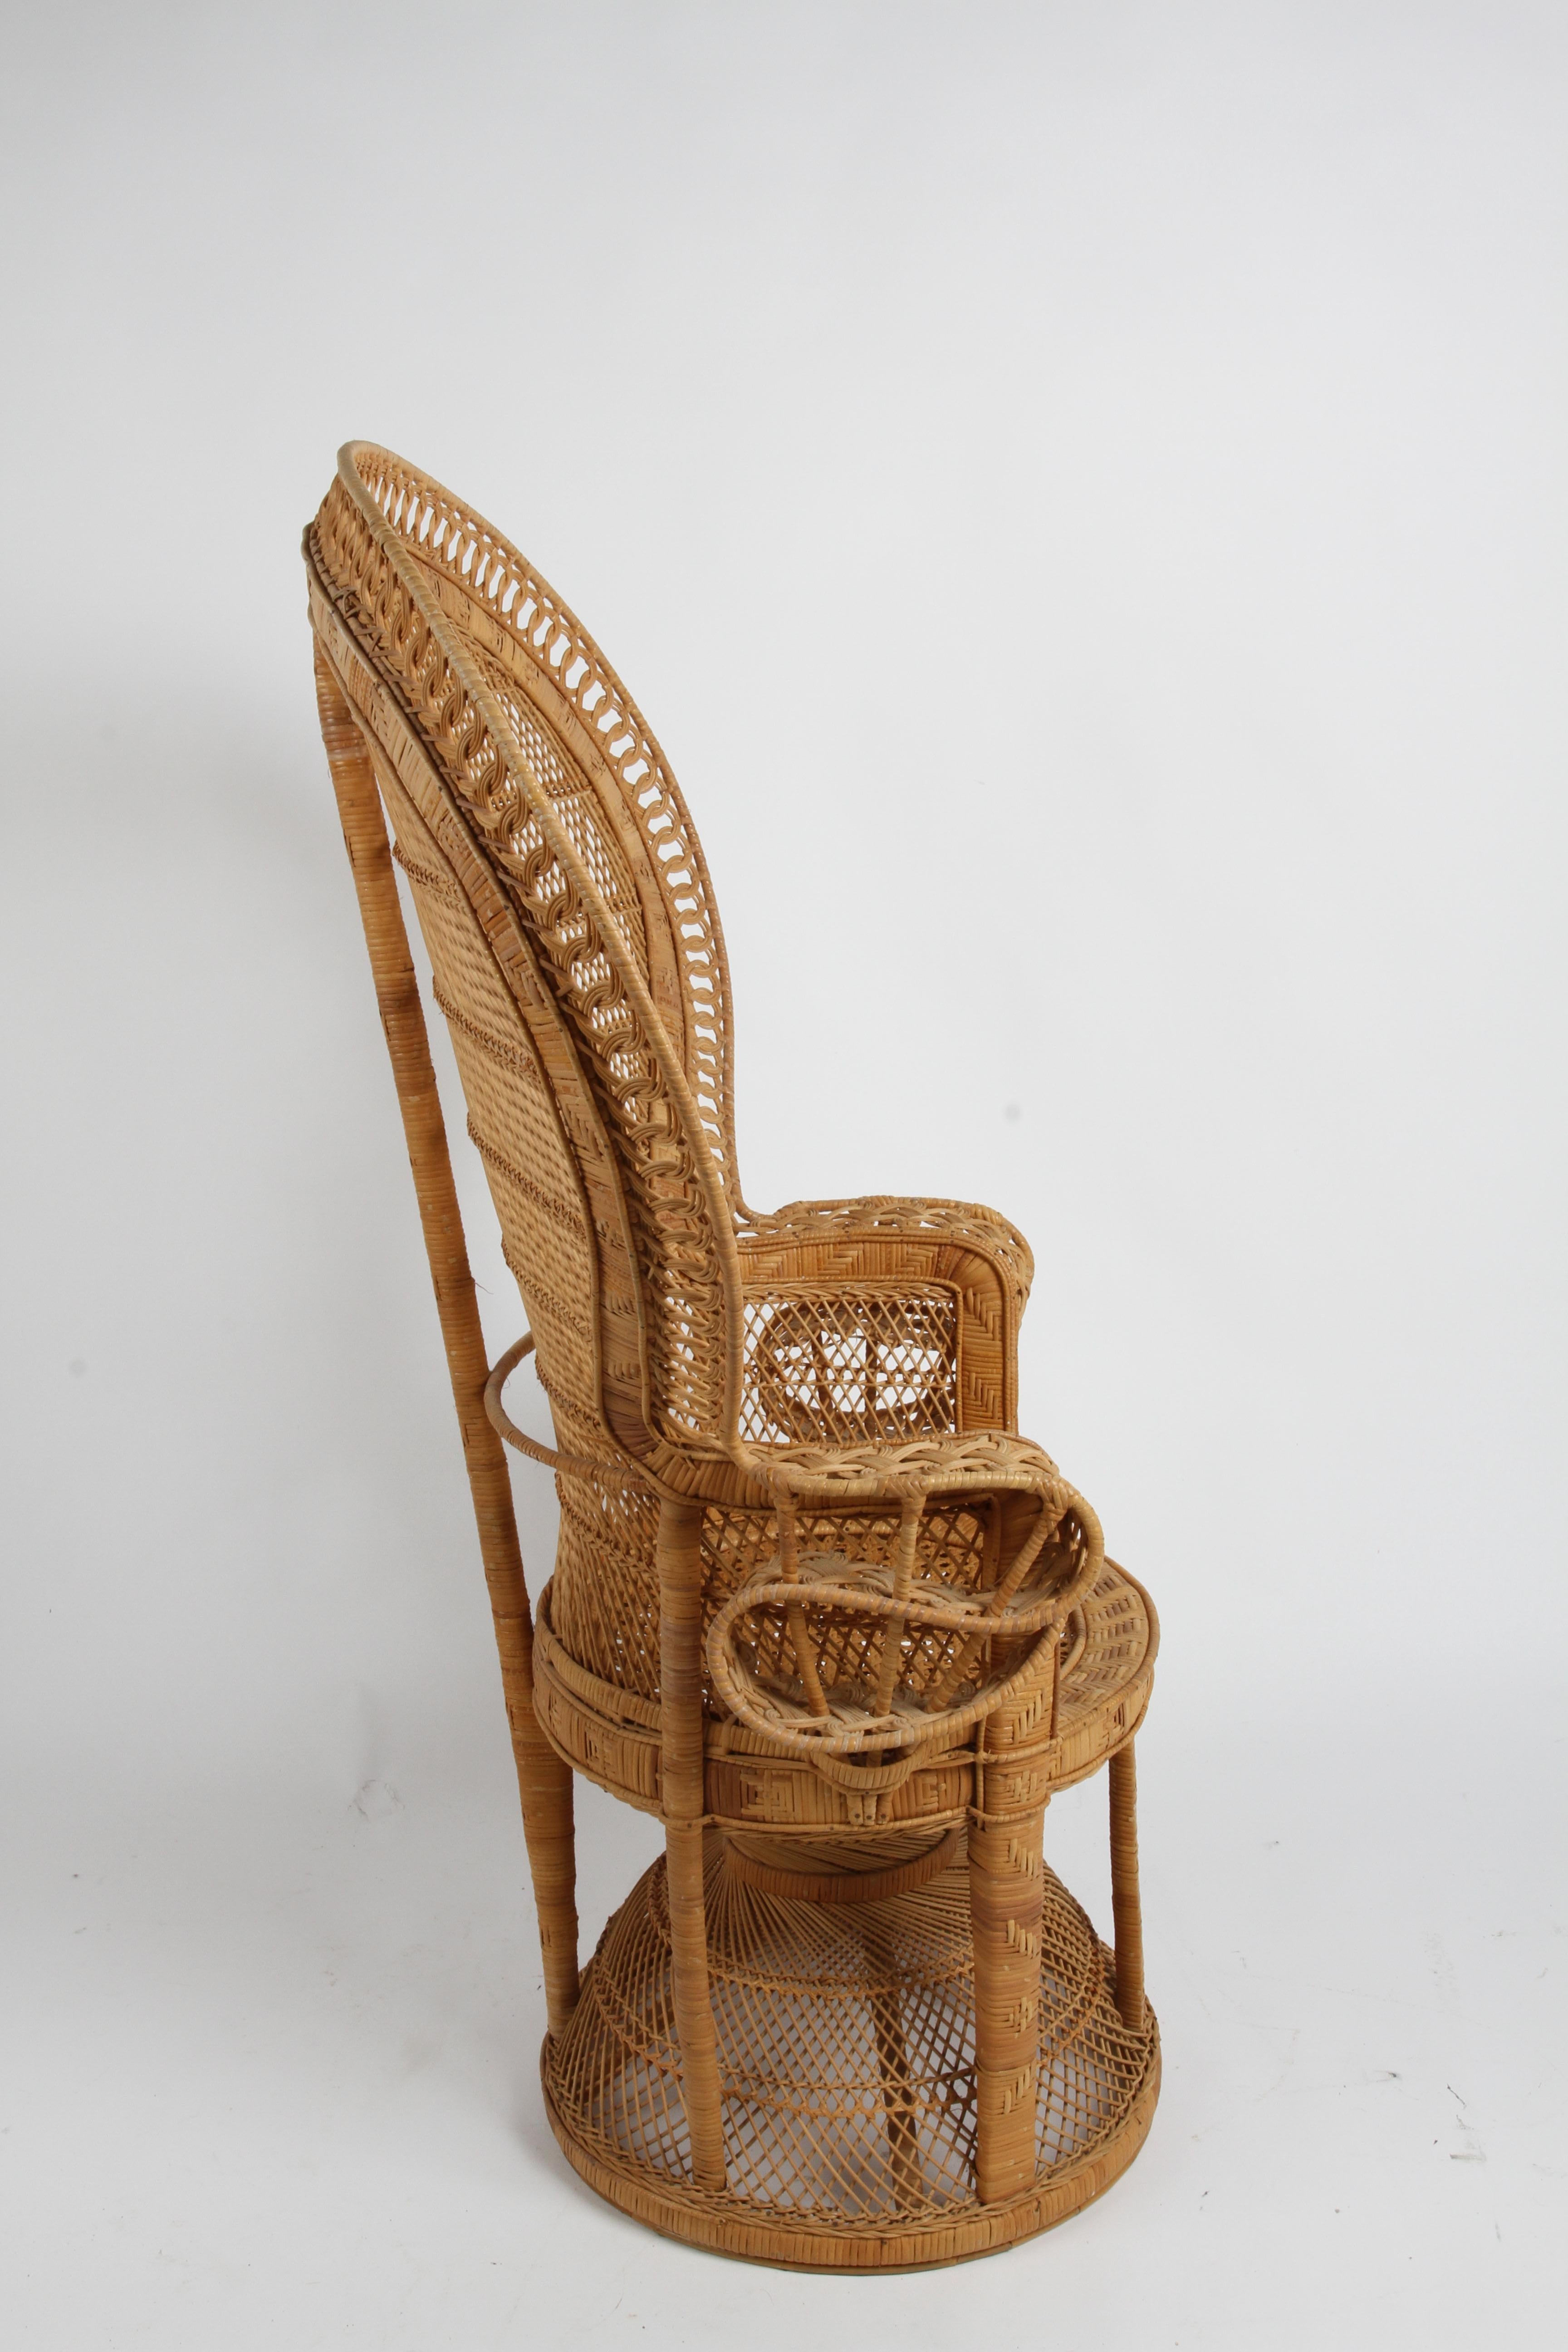 Chaise Emmanuelle paon vintage en rotin et osier, fabriquée à la main, style Boho Chic, années 1970 2